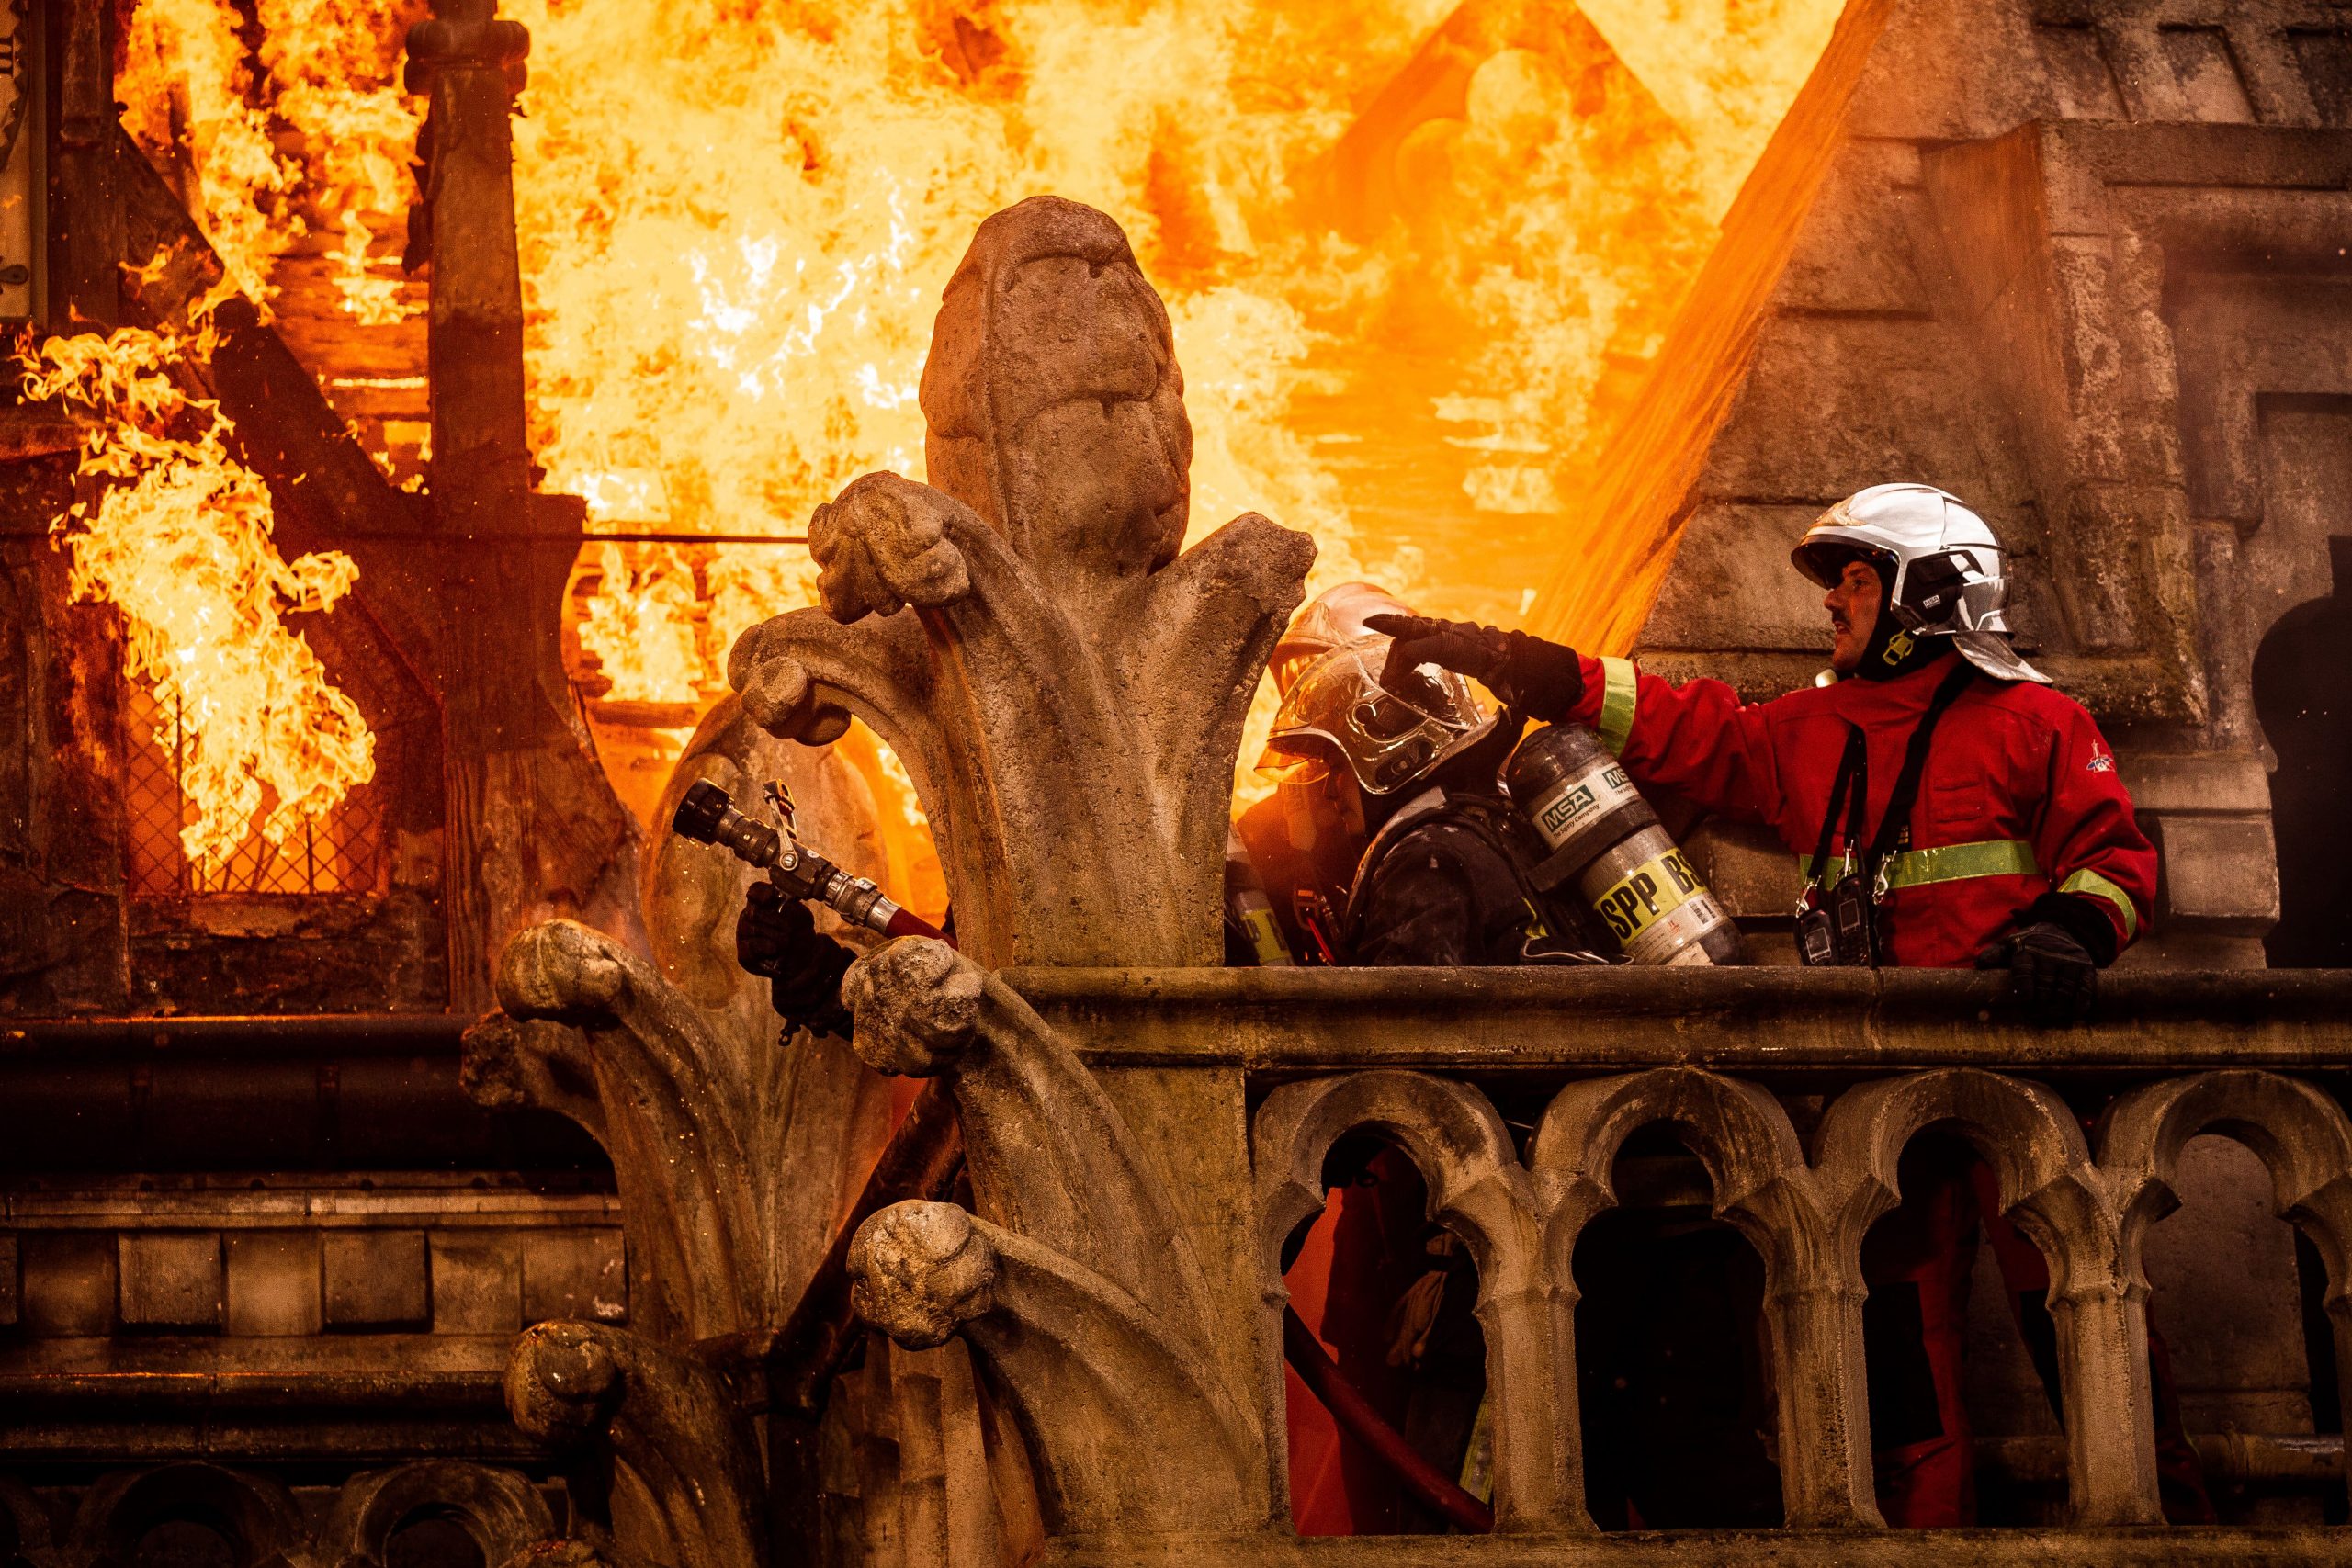 Les pompiers en action sur le toit de Notre-Dame en feu, lors de la reconstitution de la scène à Bry-sur-Marne. Crédit : Mickael Lefevre (BSPP)